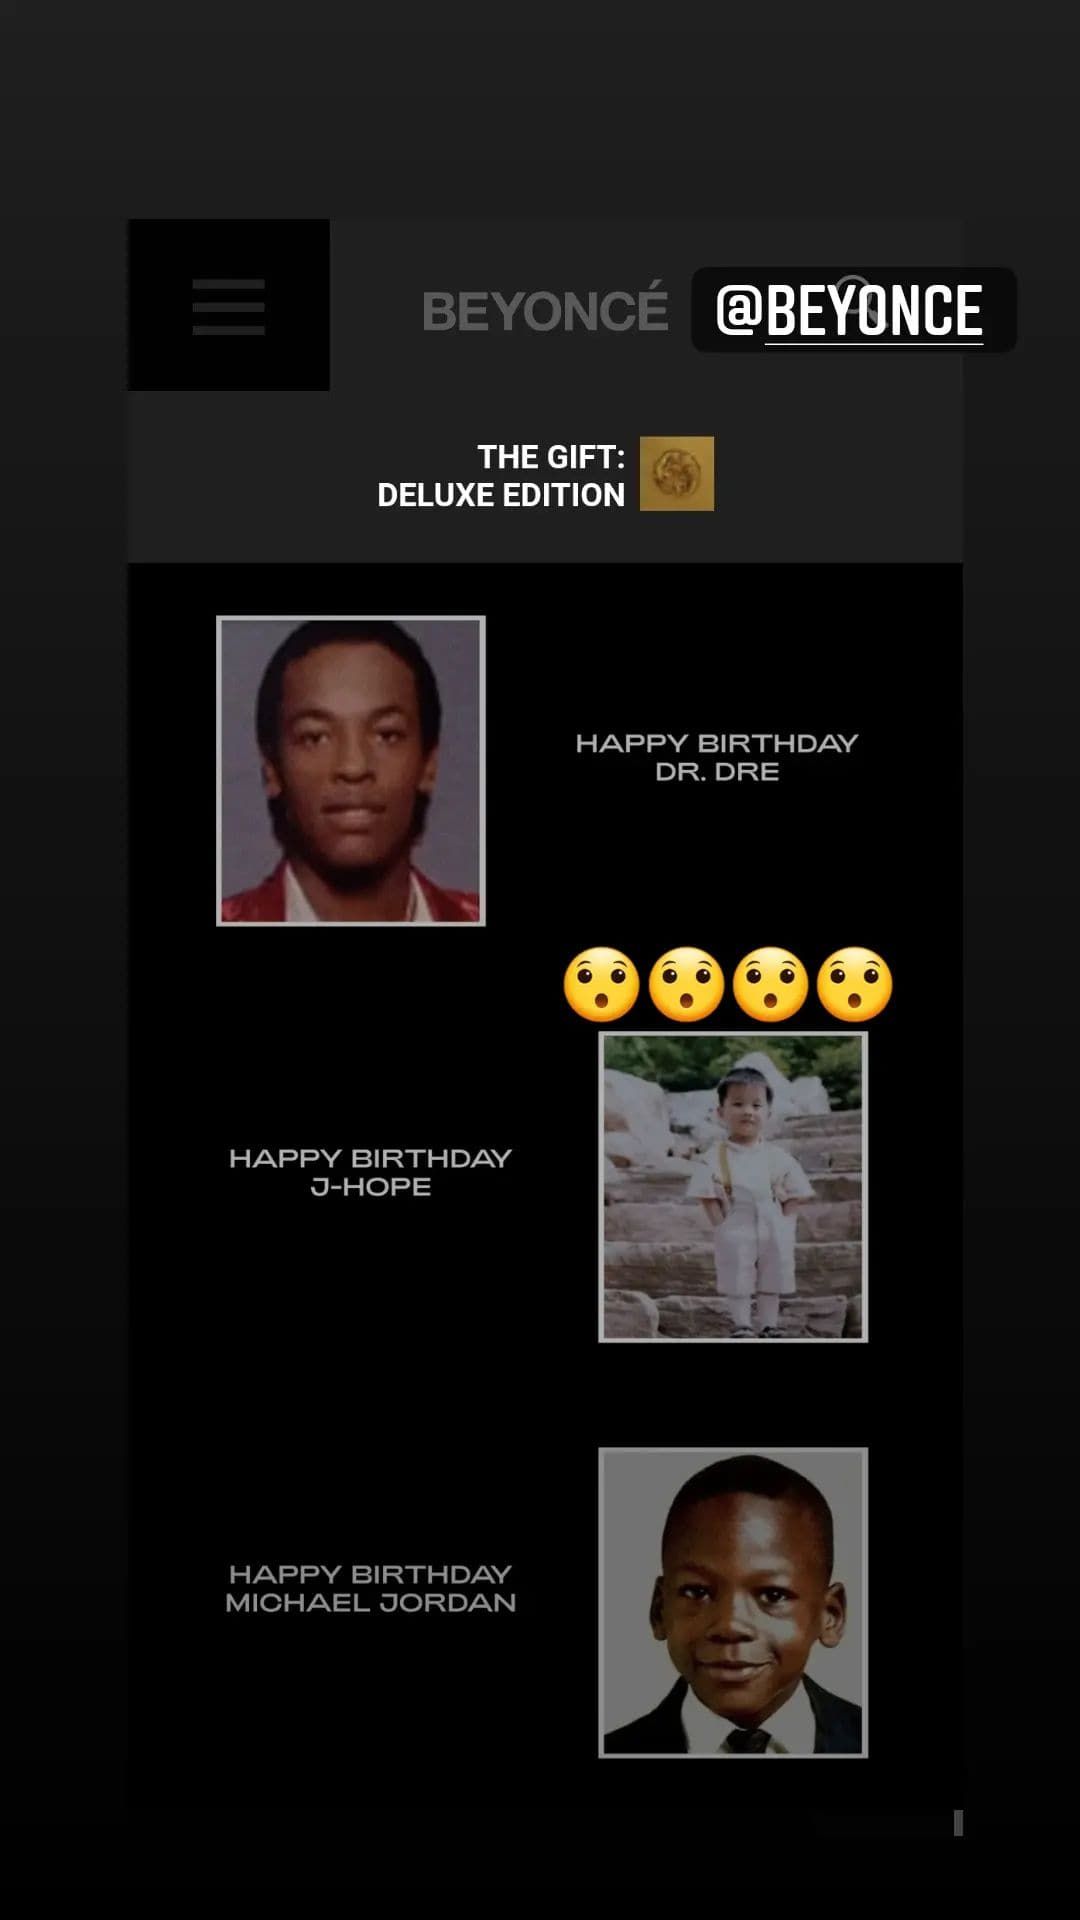 tangkapan layar Instagram Story J-Hope BTS yang memberikan reaksi terhadap ucapan selamat ulang tahun dari Beyonce